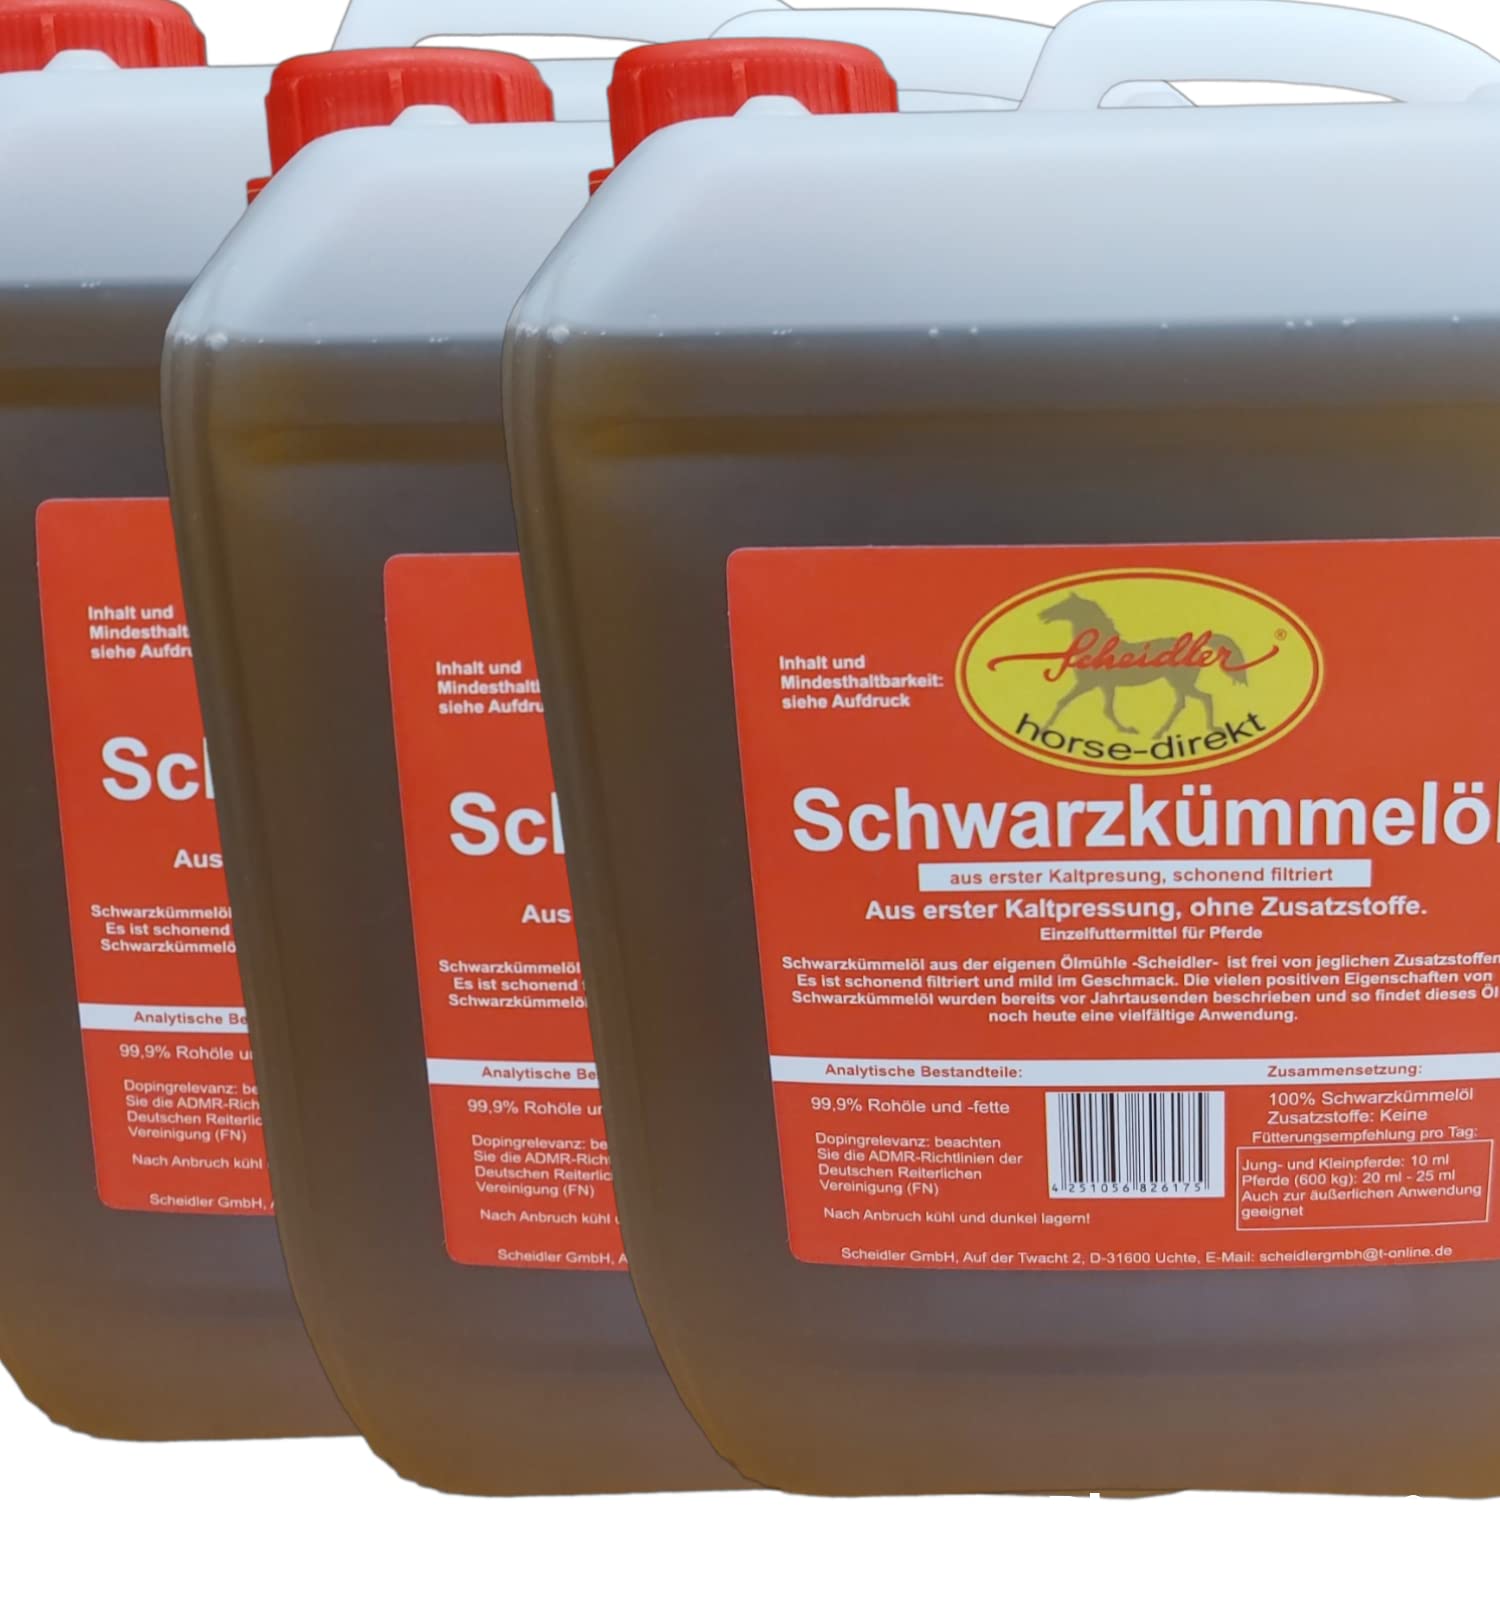 Horse-Direkt 3 x 2,5 L Premium Schwarzkümmelöl für Pferde und Hunde Kaltgepresst Kanister – Frisch Aus Eigener Pressung